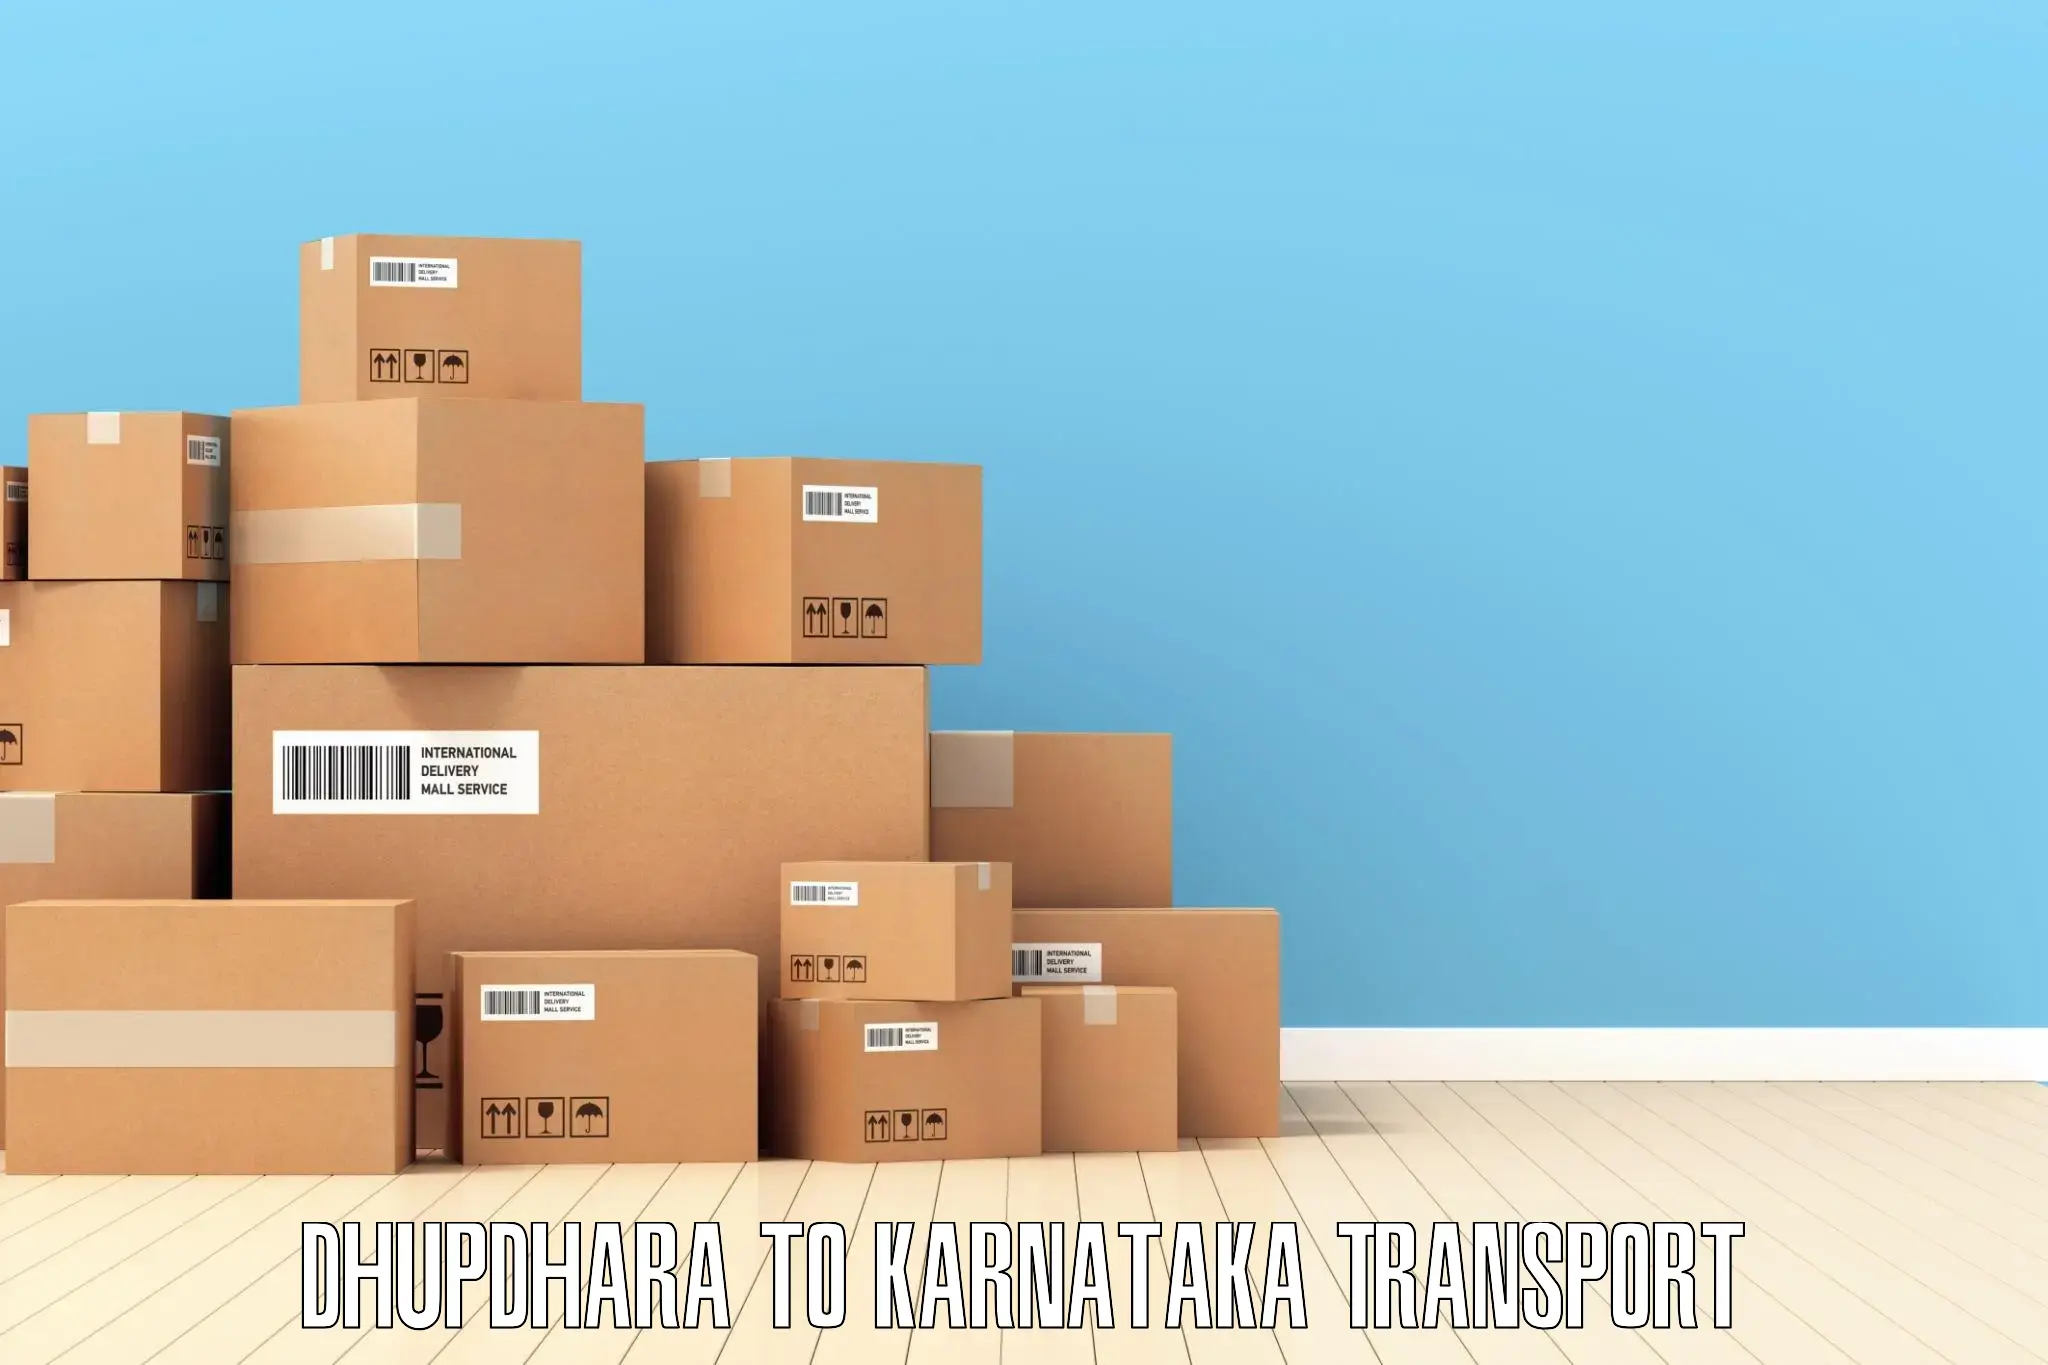 Land transport services Dhupdhara to Mandya